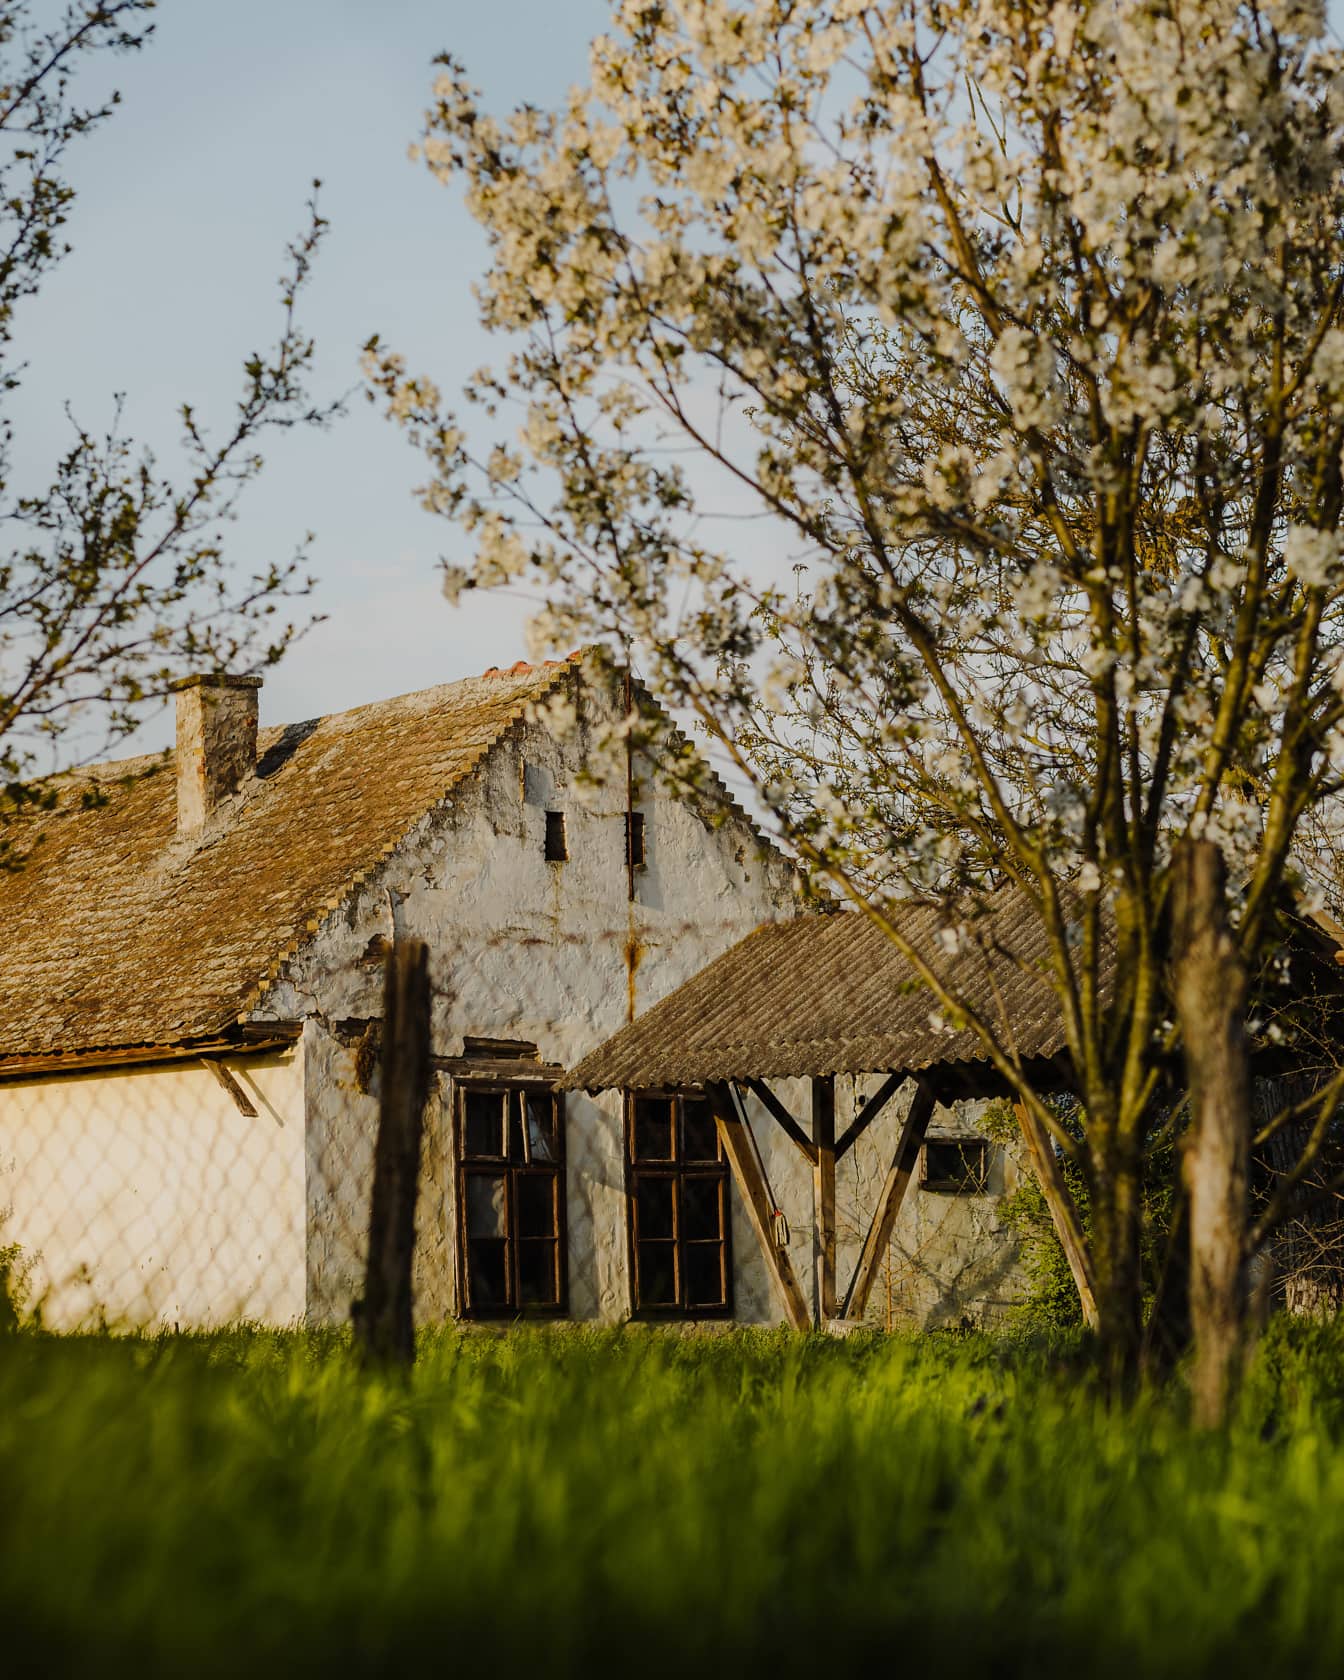 Ρουστίκ αγροικία χωριού στην ύπαιθρο με χορτώδη αυλή